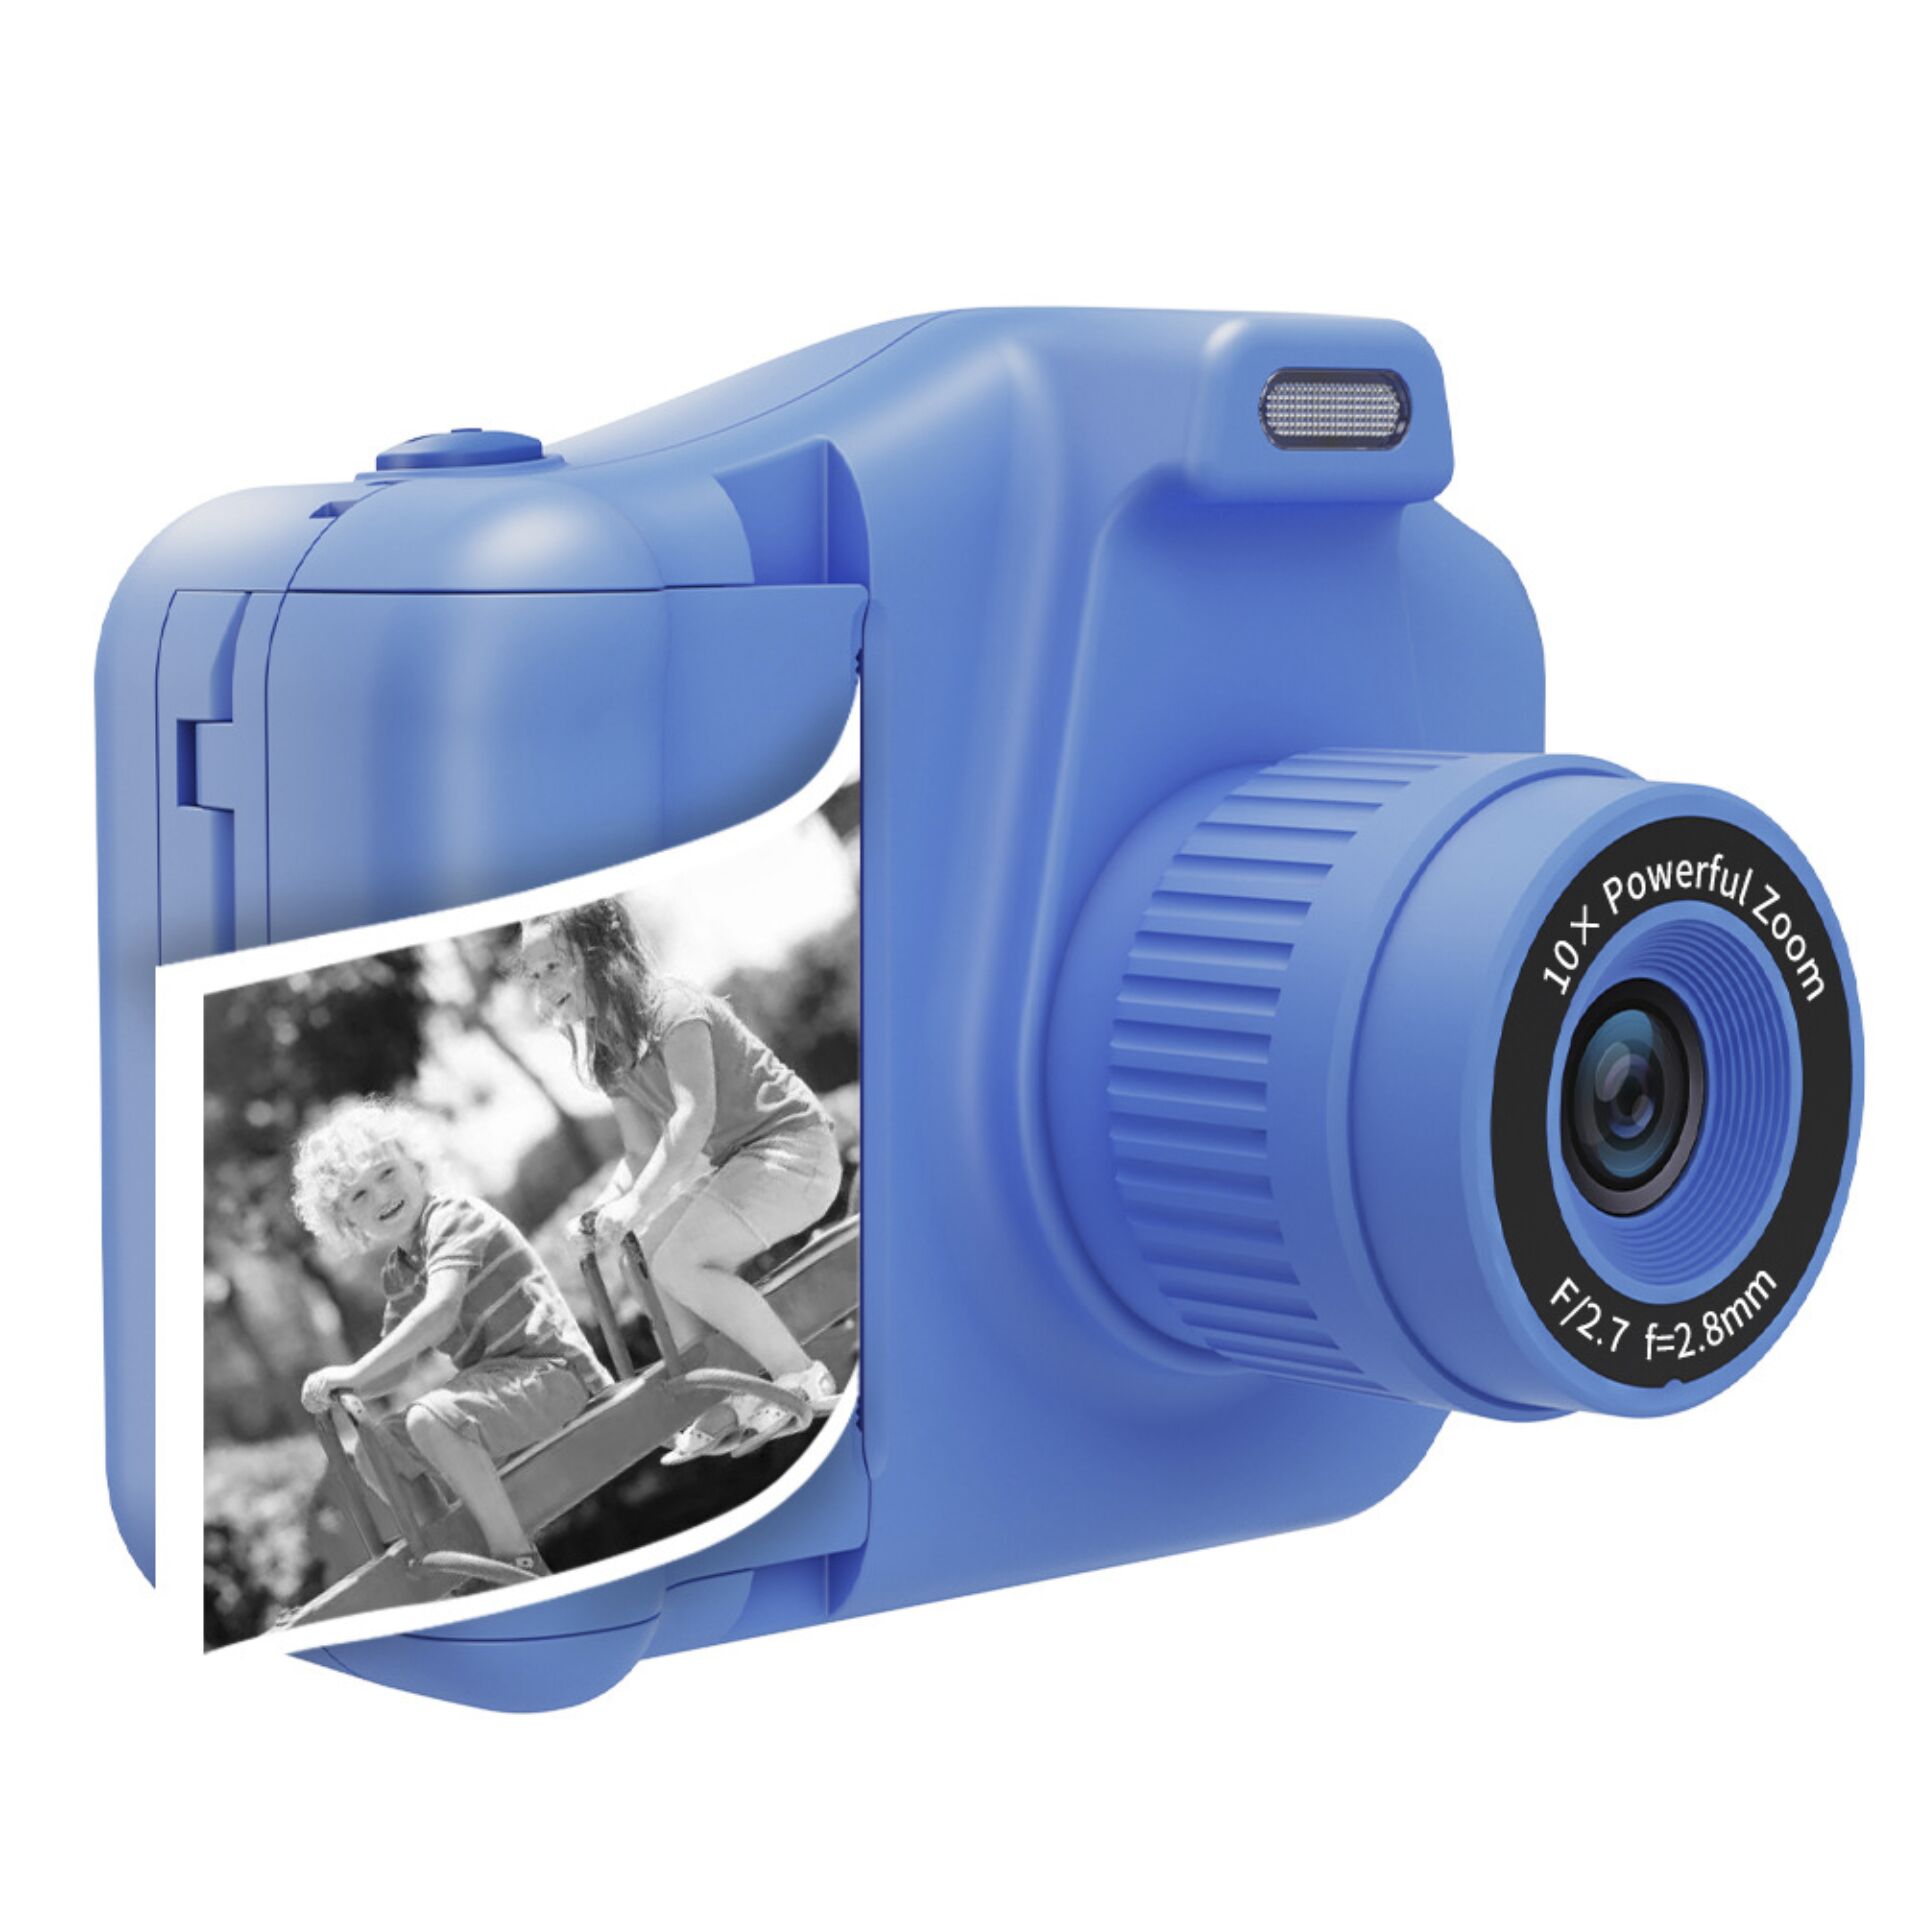 Denver KPC-1370 kids camera Blue with printer